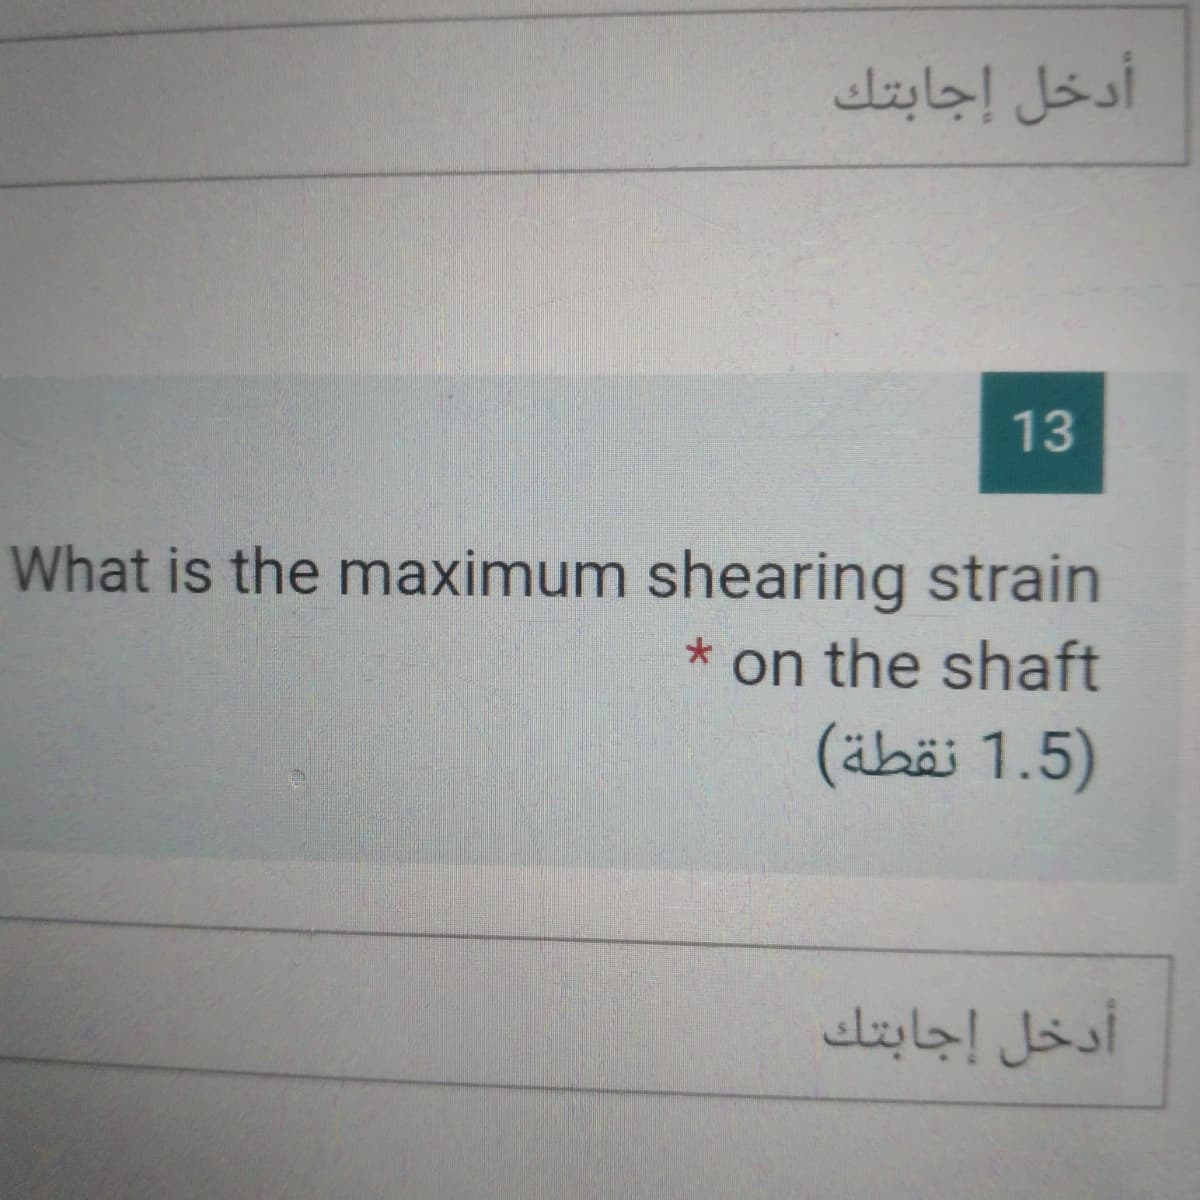 أدخل إجابتك
13
What is the maximum shearing strain
on the shaft
(äbäi 1.5)
أدخل إجابتك
